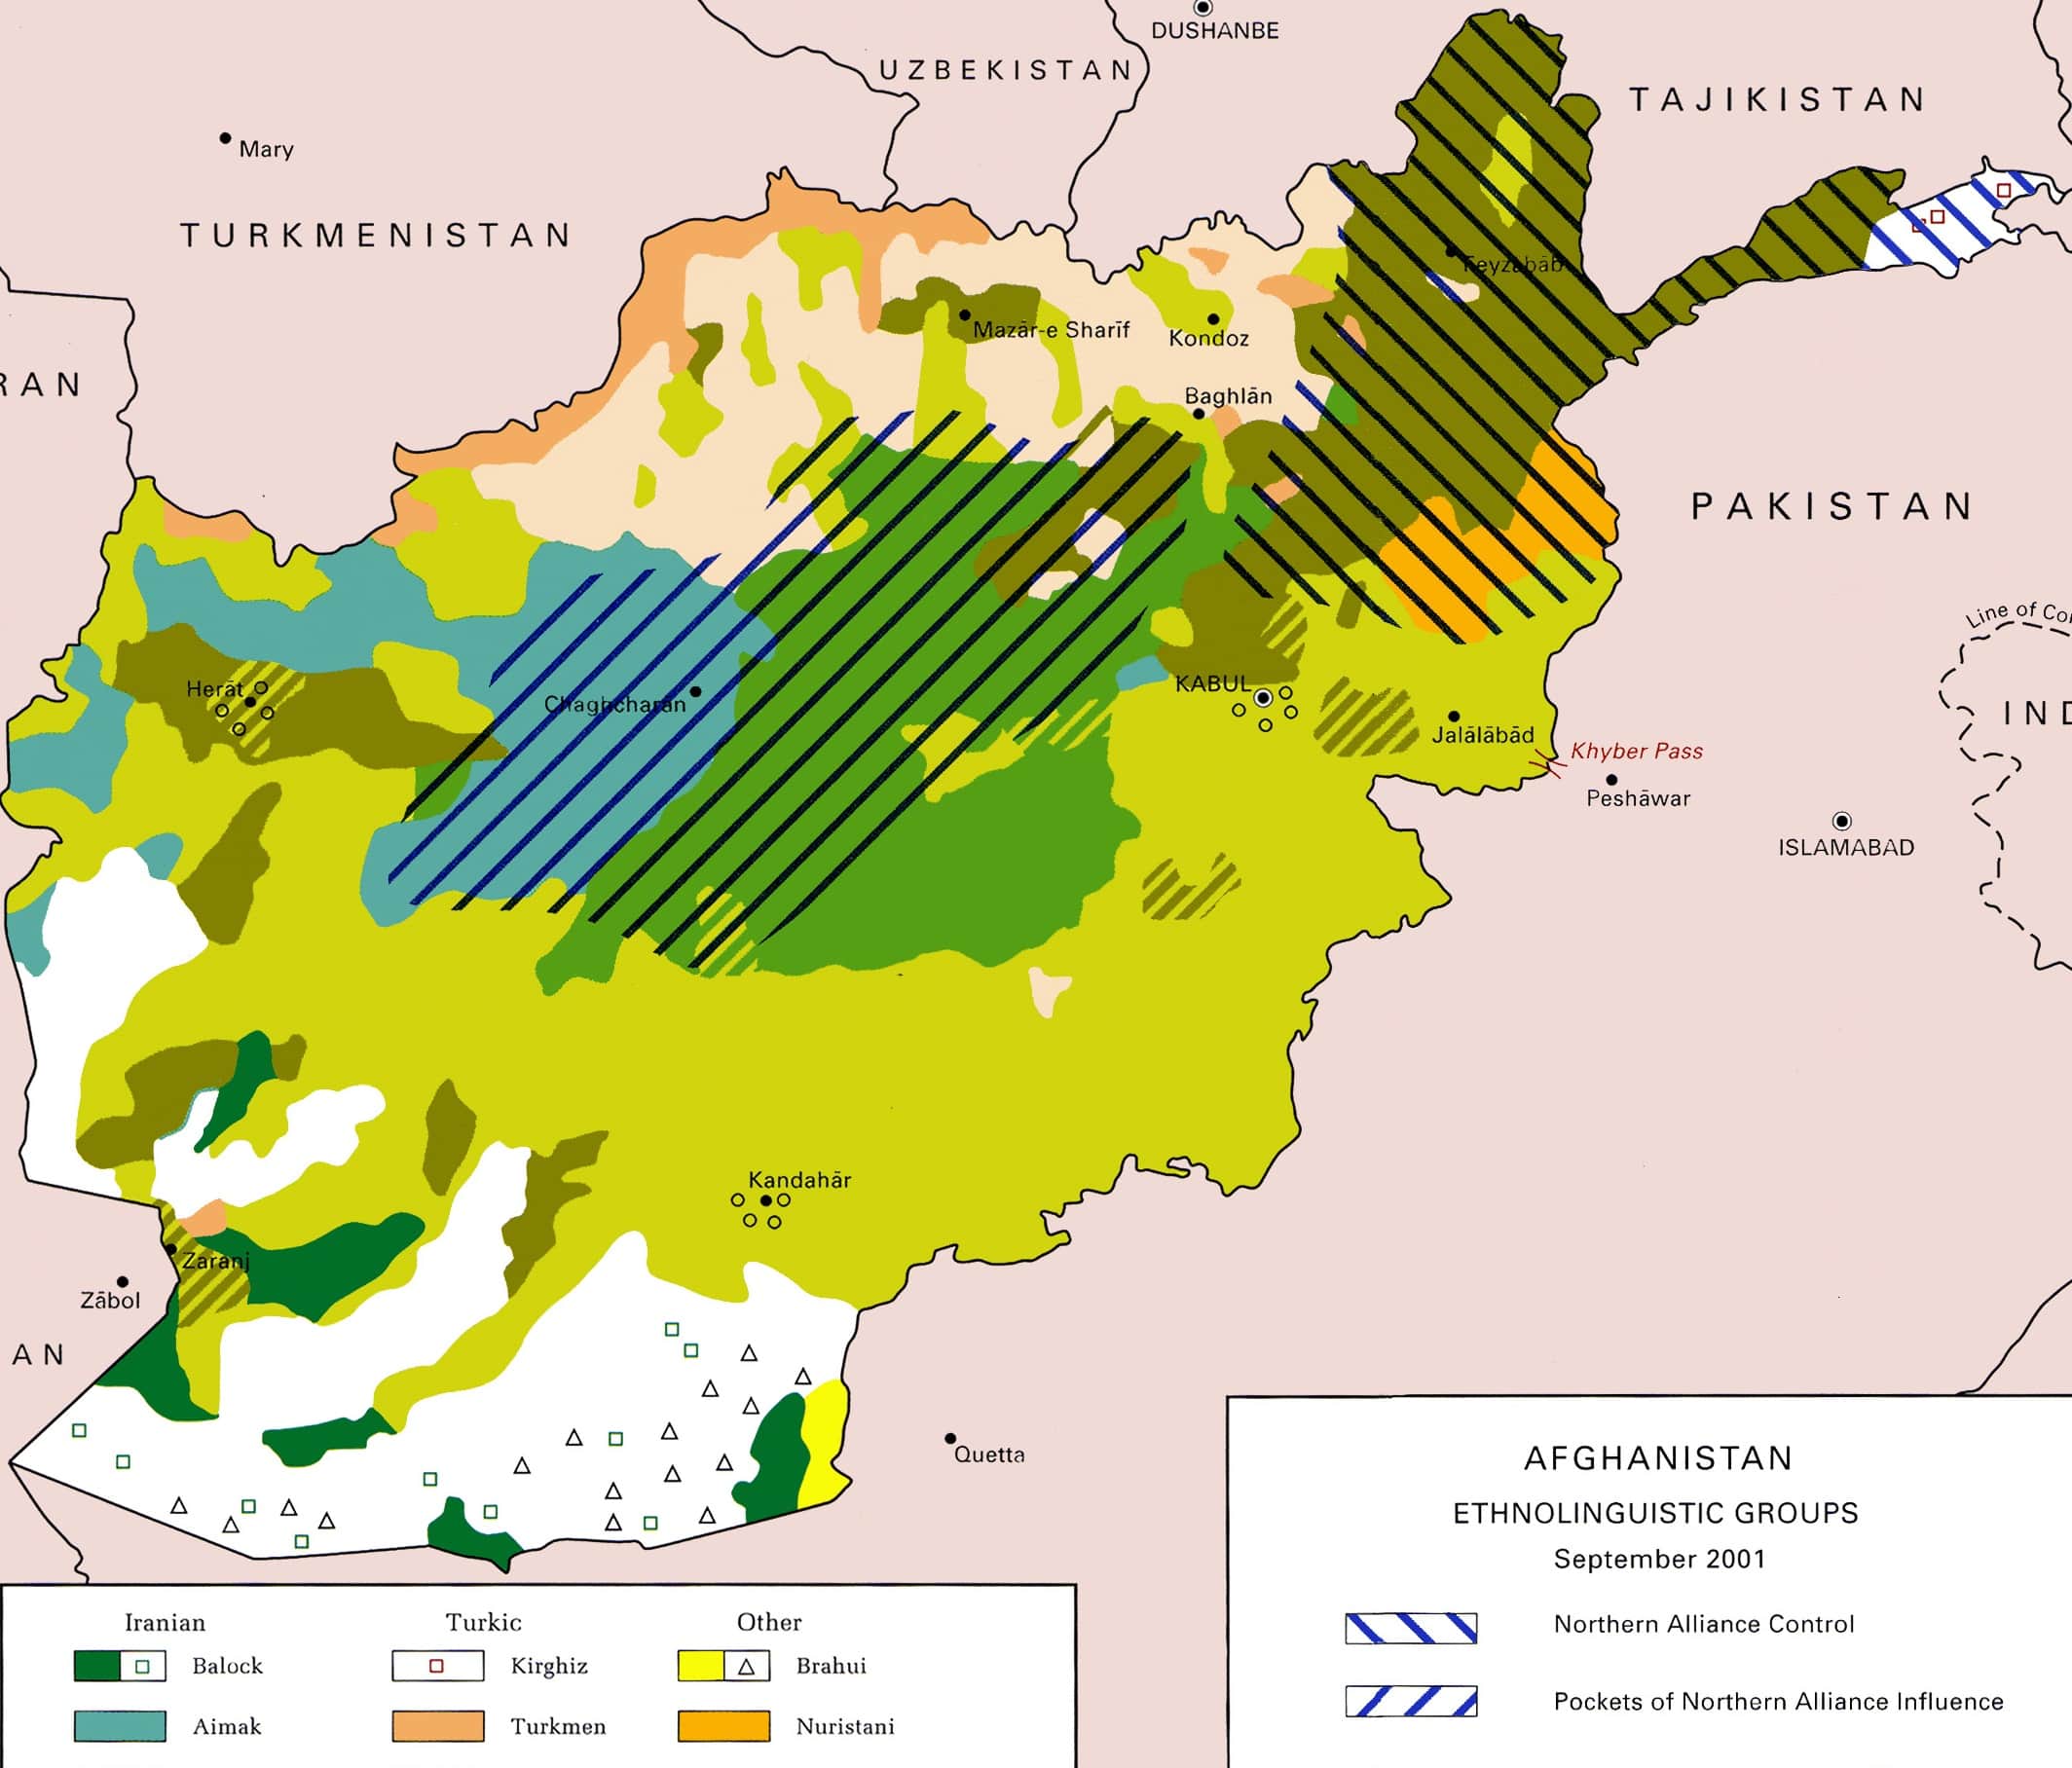 افغانستان و قوم پشتون طالبان، تاجیک و هزاره - بهترکالا